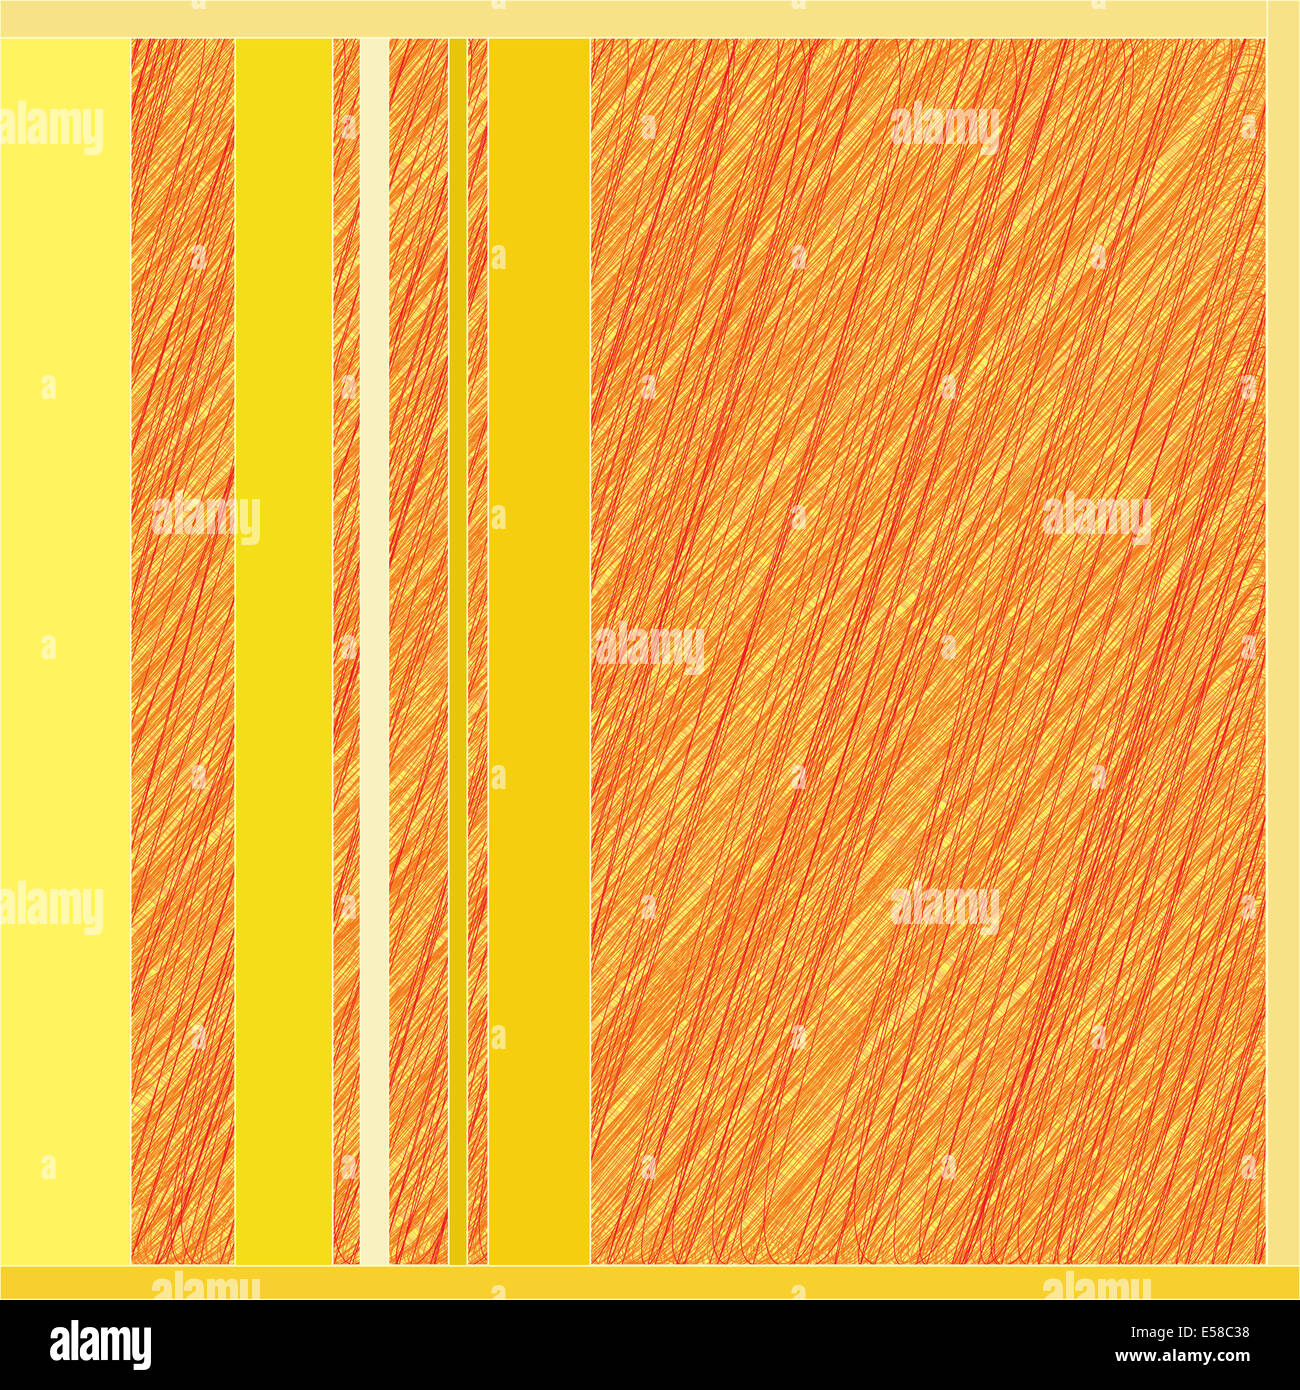 Abstract la linea arancione su sfondo giallo Foto Stock